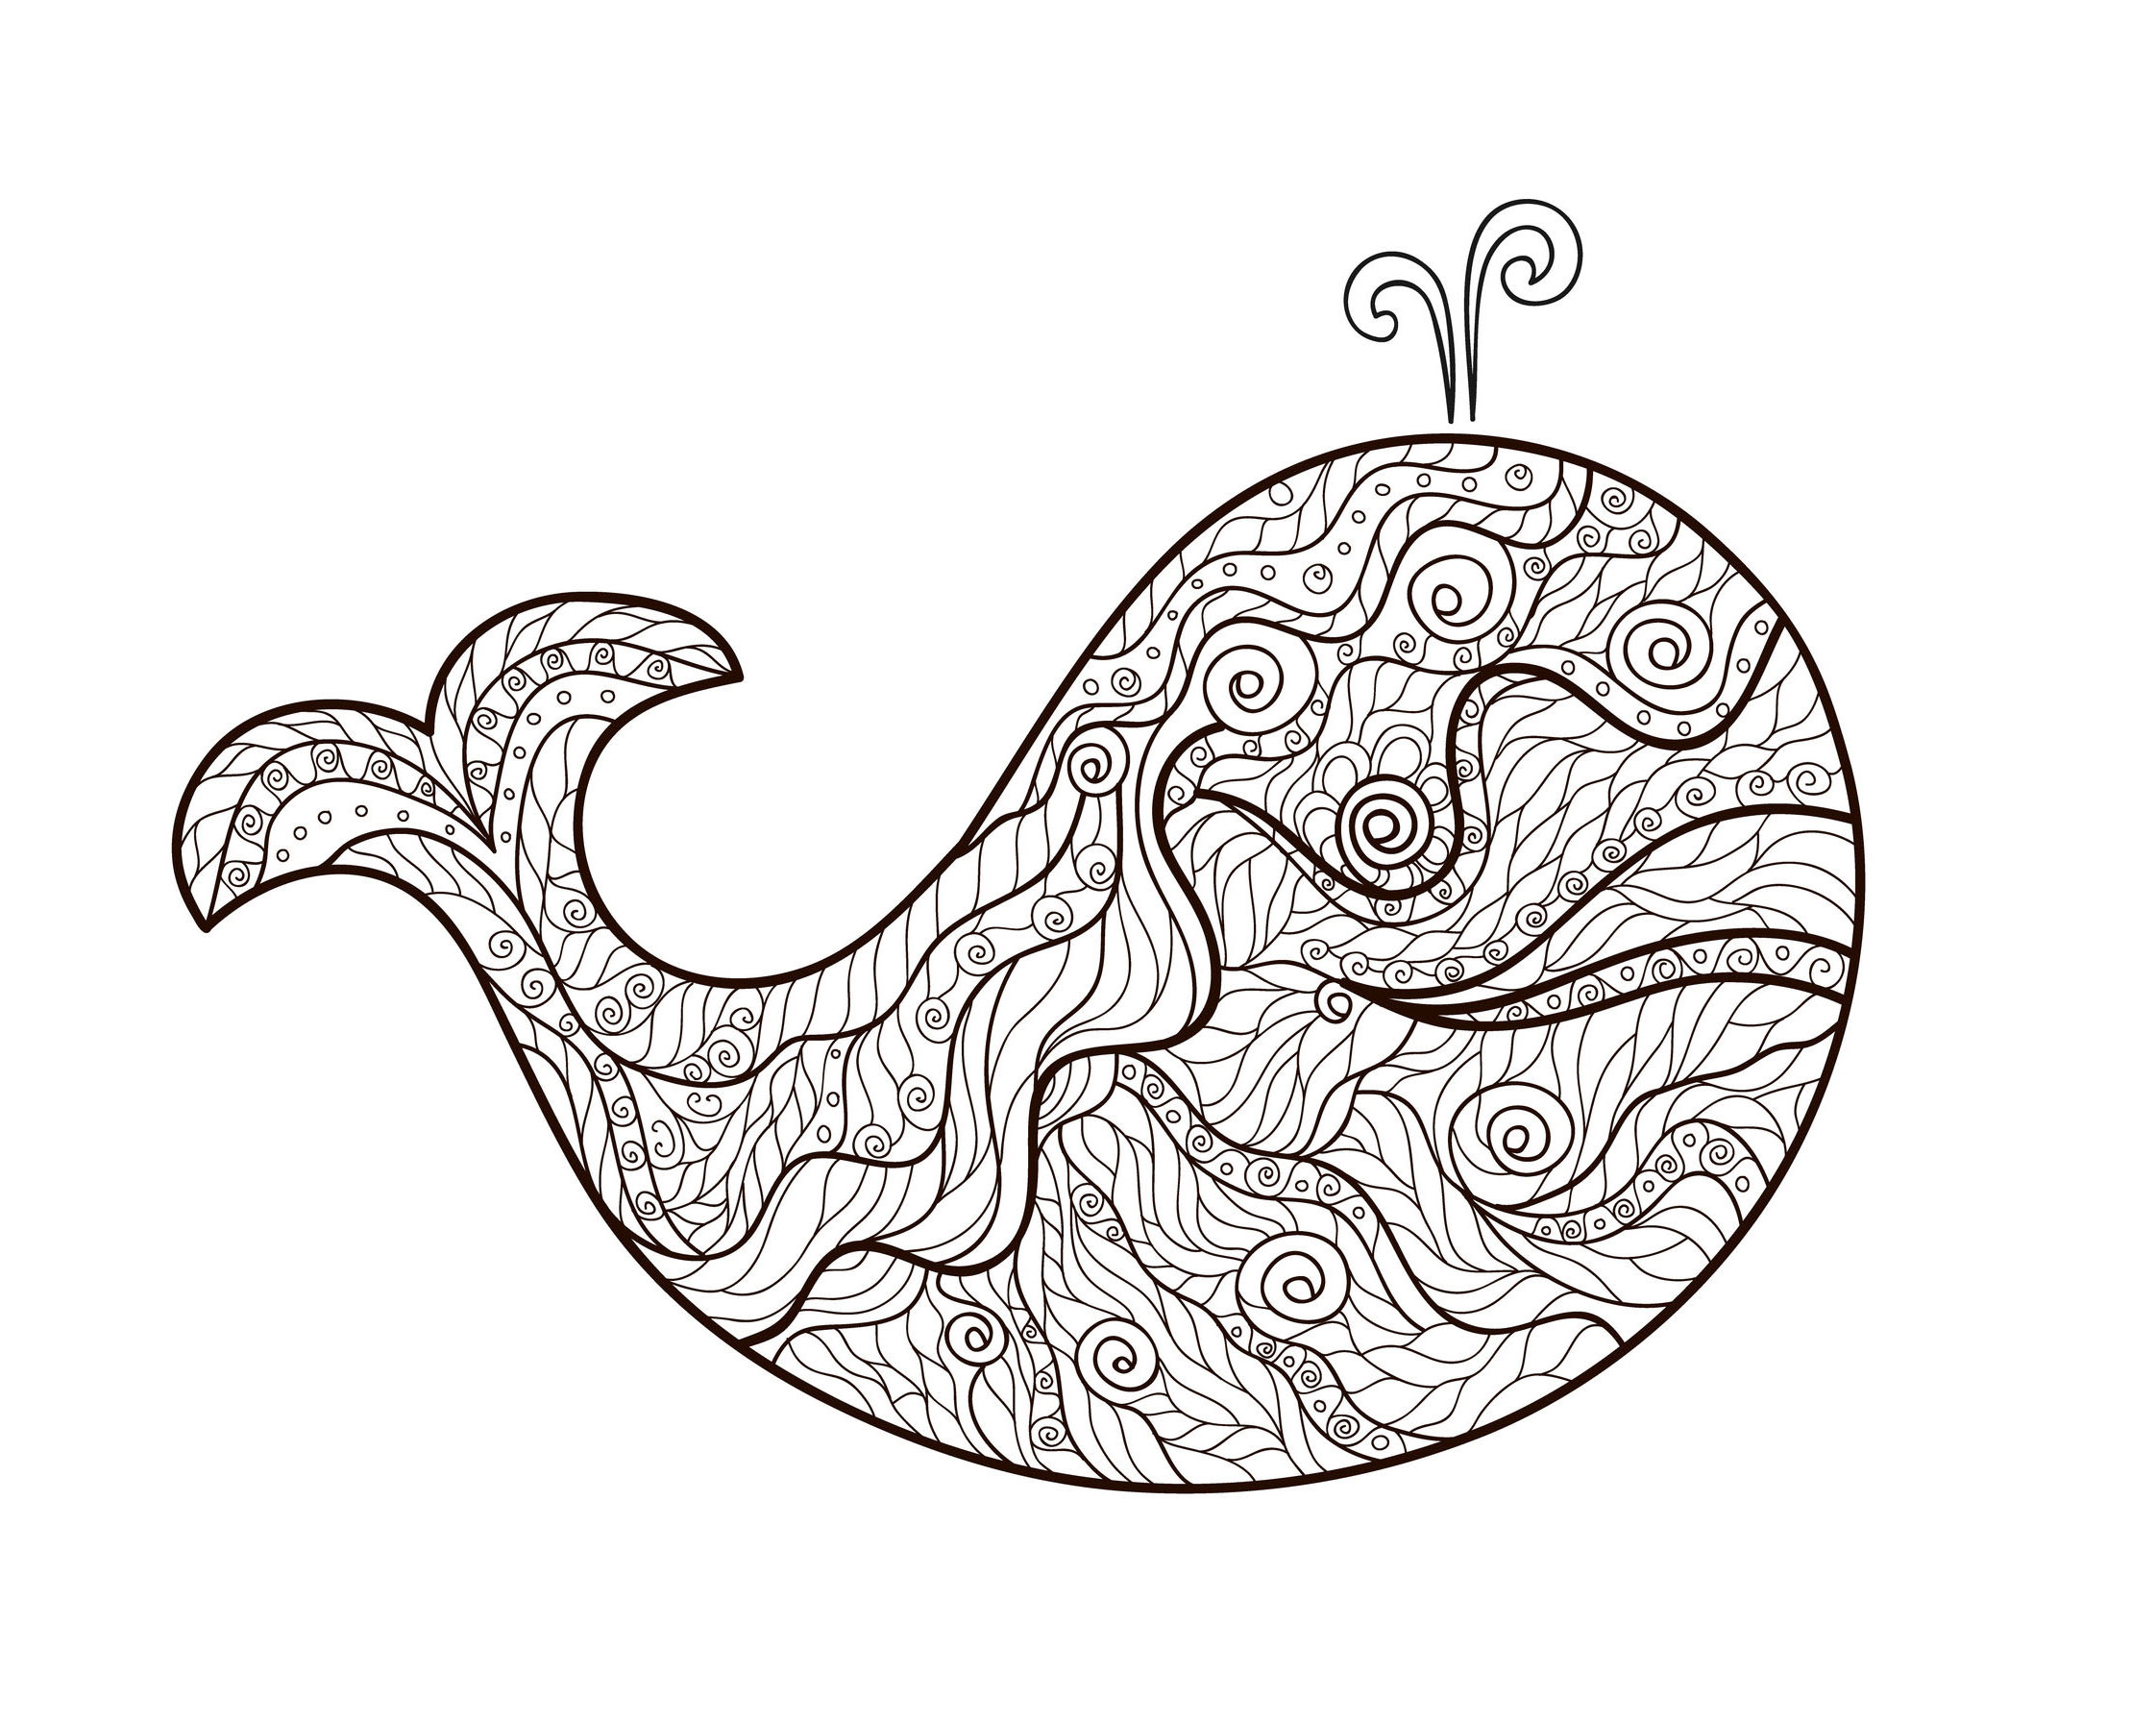 Uma baleia e motivos Zentangle simples para colorir, por Meggichka (fonte: 123rf)